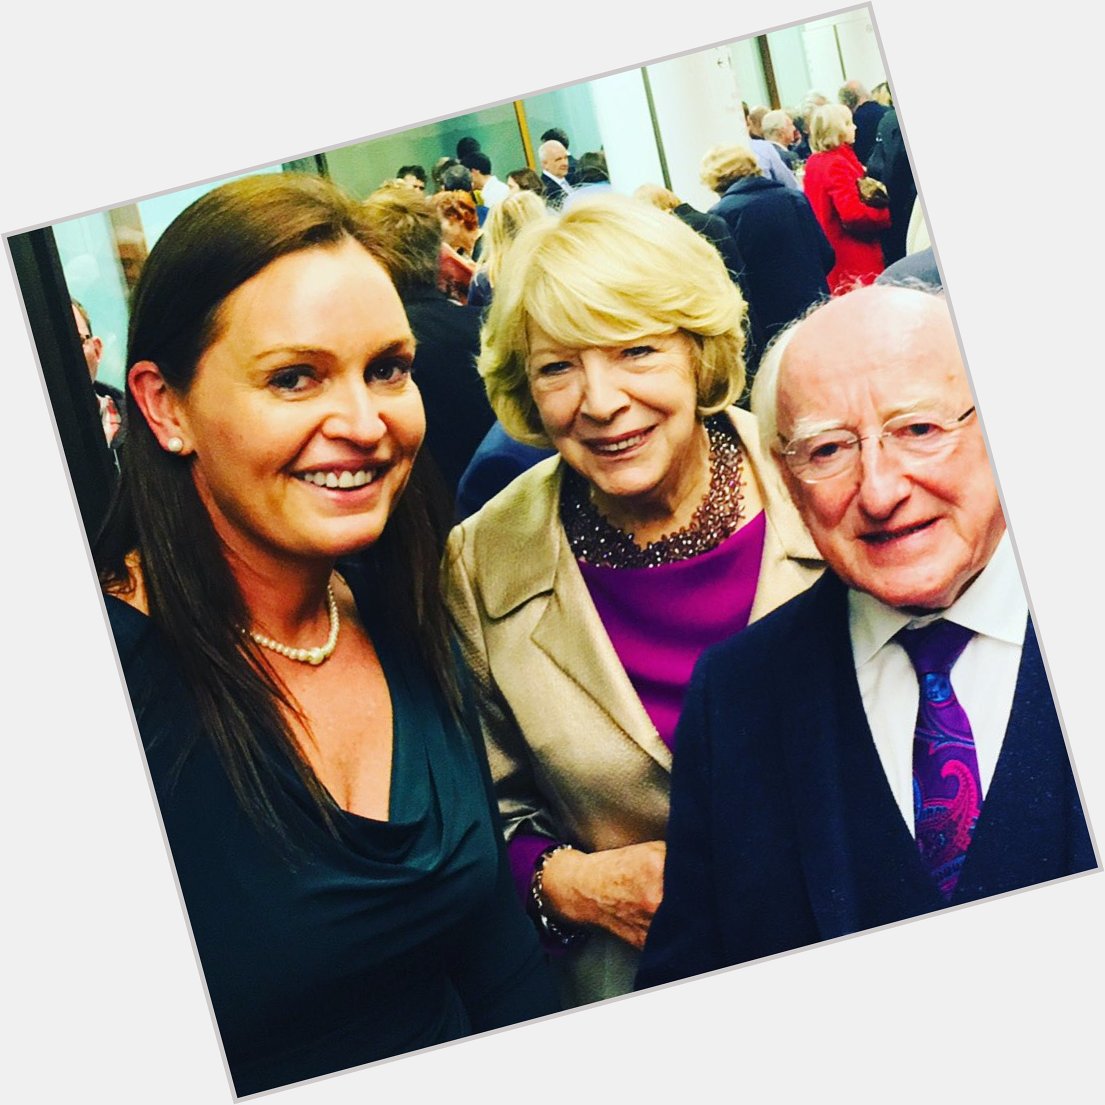 Happy 80th Birthday to Uachtarán na hÉireann, President of Ireland Michael D. Higgins 